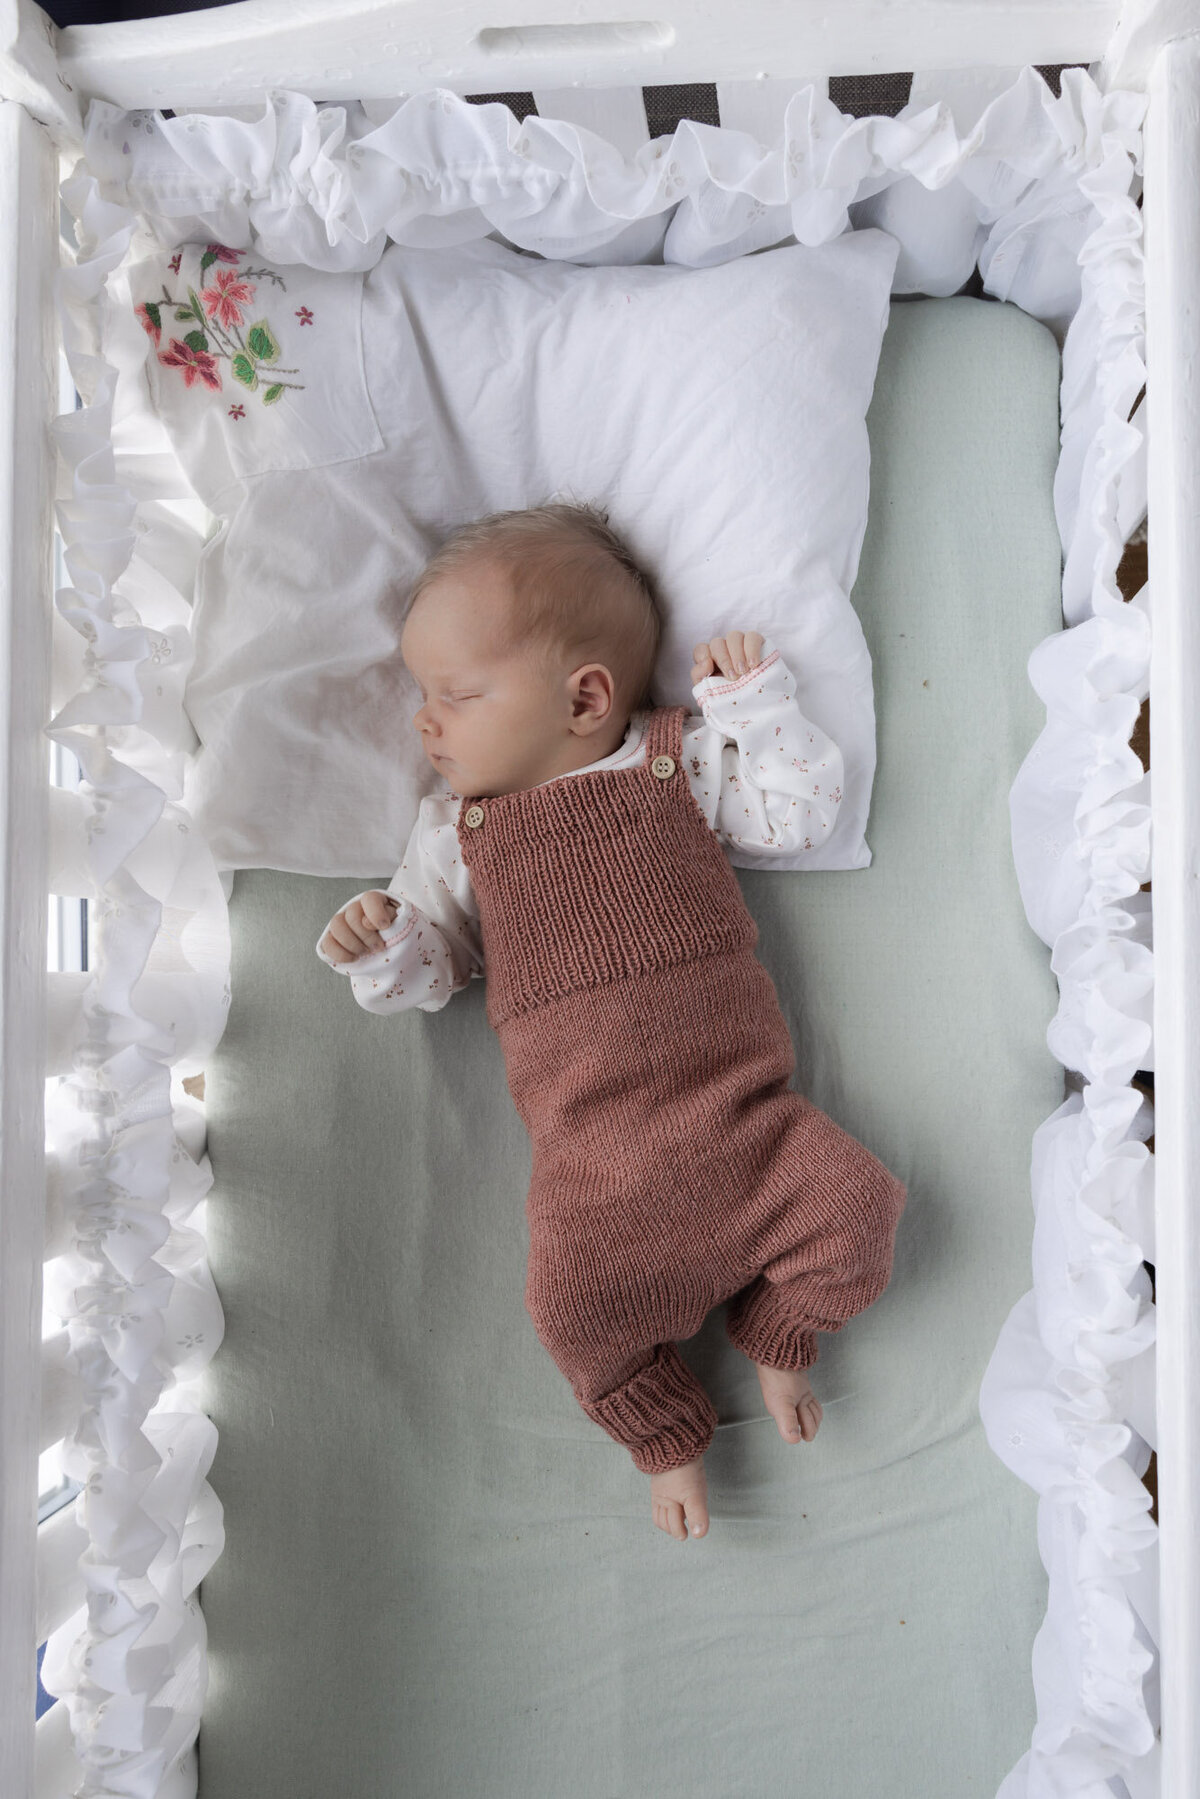 Livsstilsfoto oversiktsbilde av baby i babyseng, fotografert ovenfra og ned.